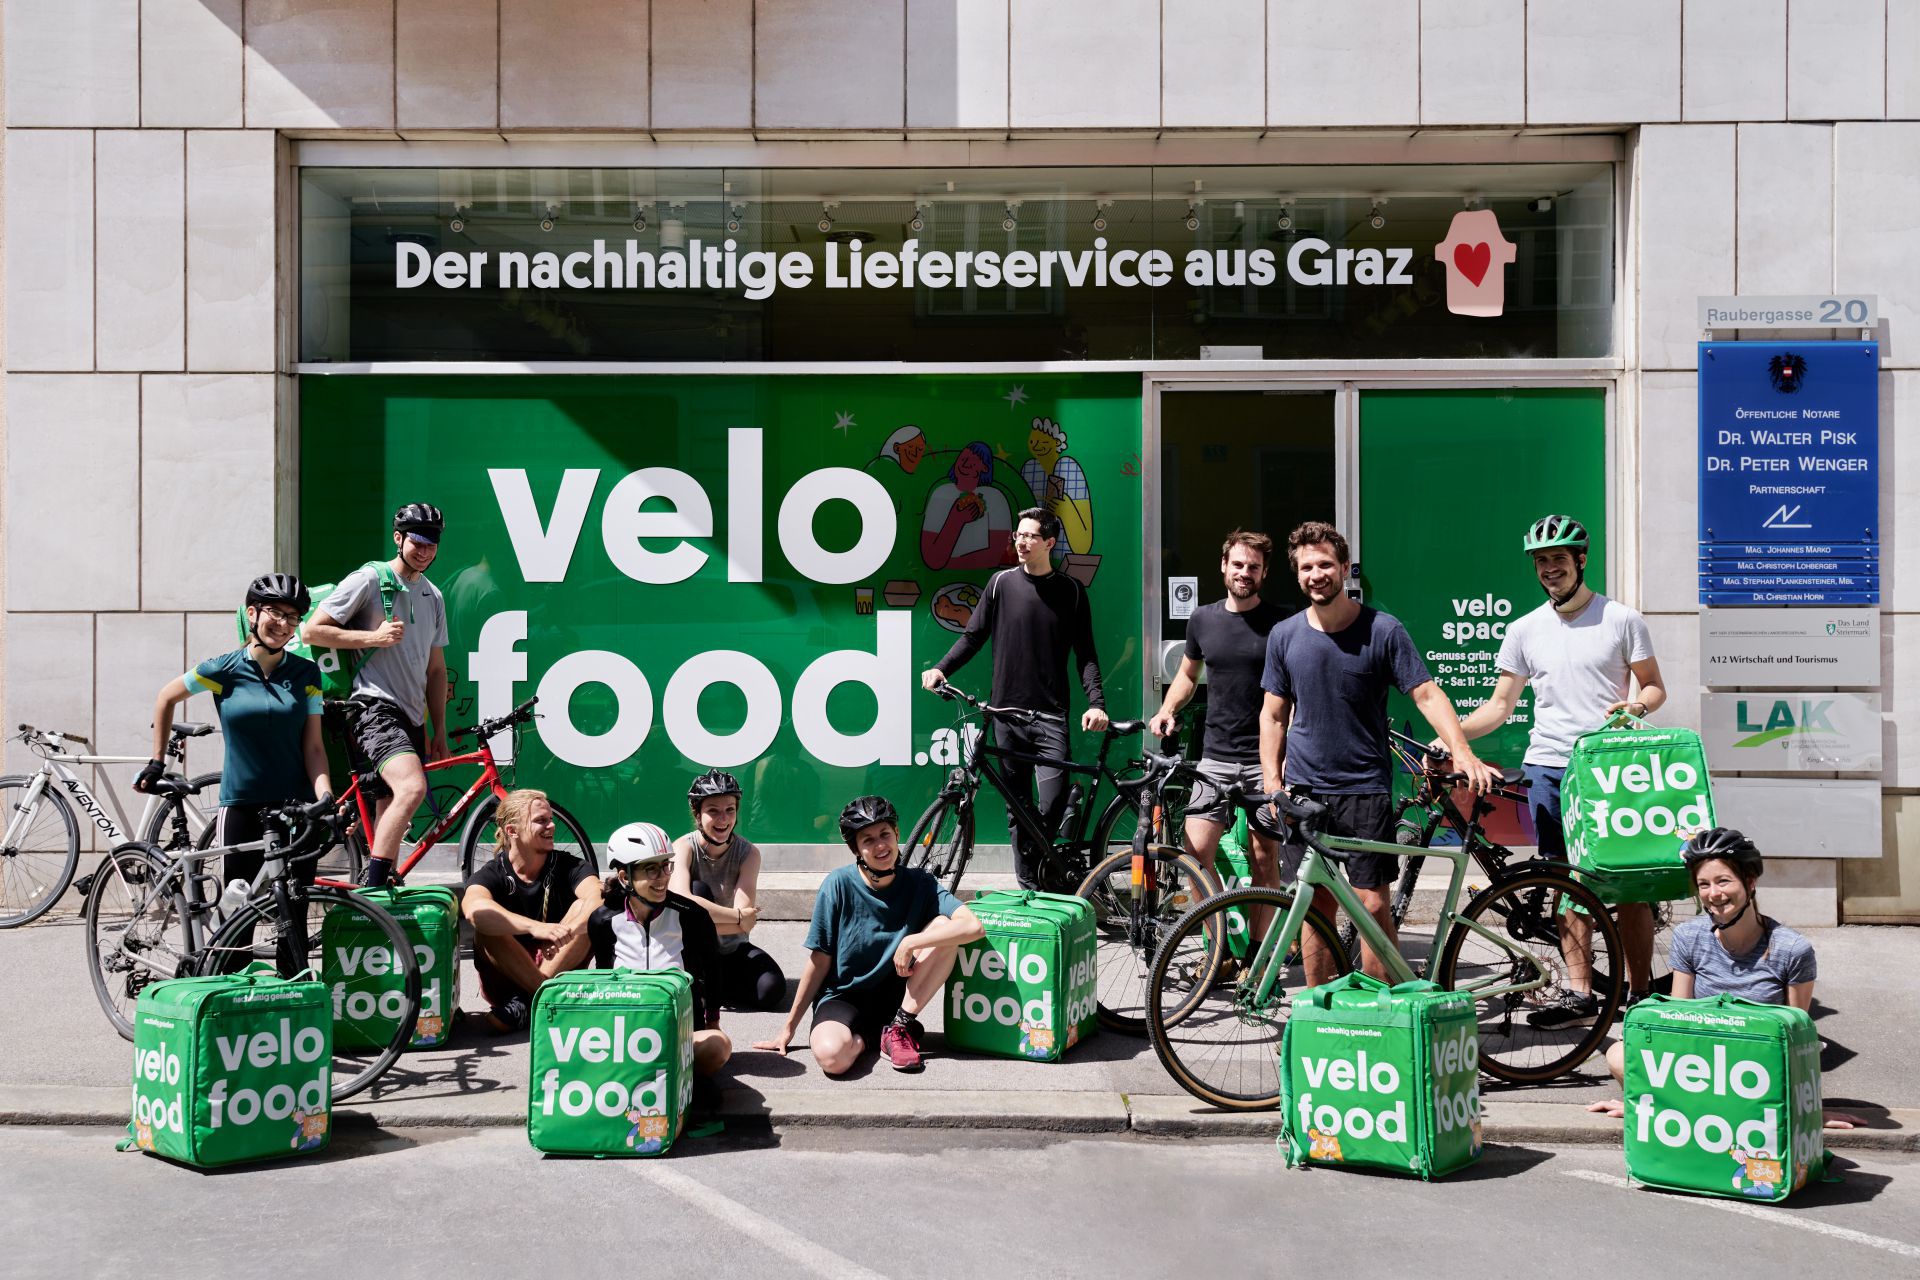 Velofood.at - der nachhaltige Lieferdienst in Graz